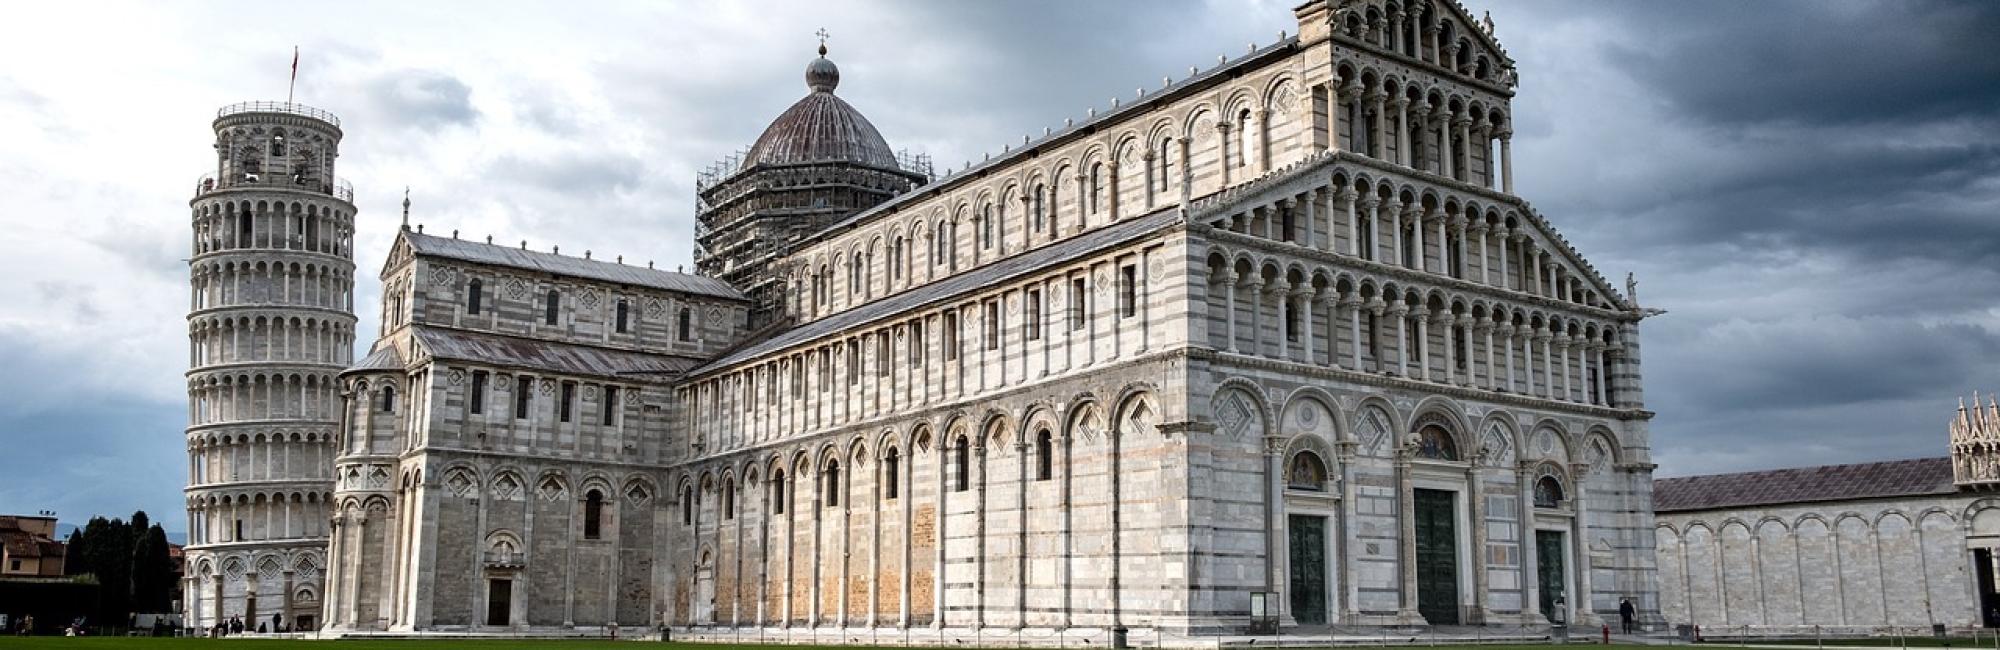 Pisa a Lucca: La facciata del Duomo di Pisa con la torre pendente dietro